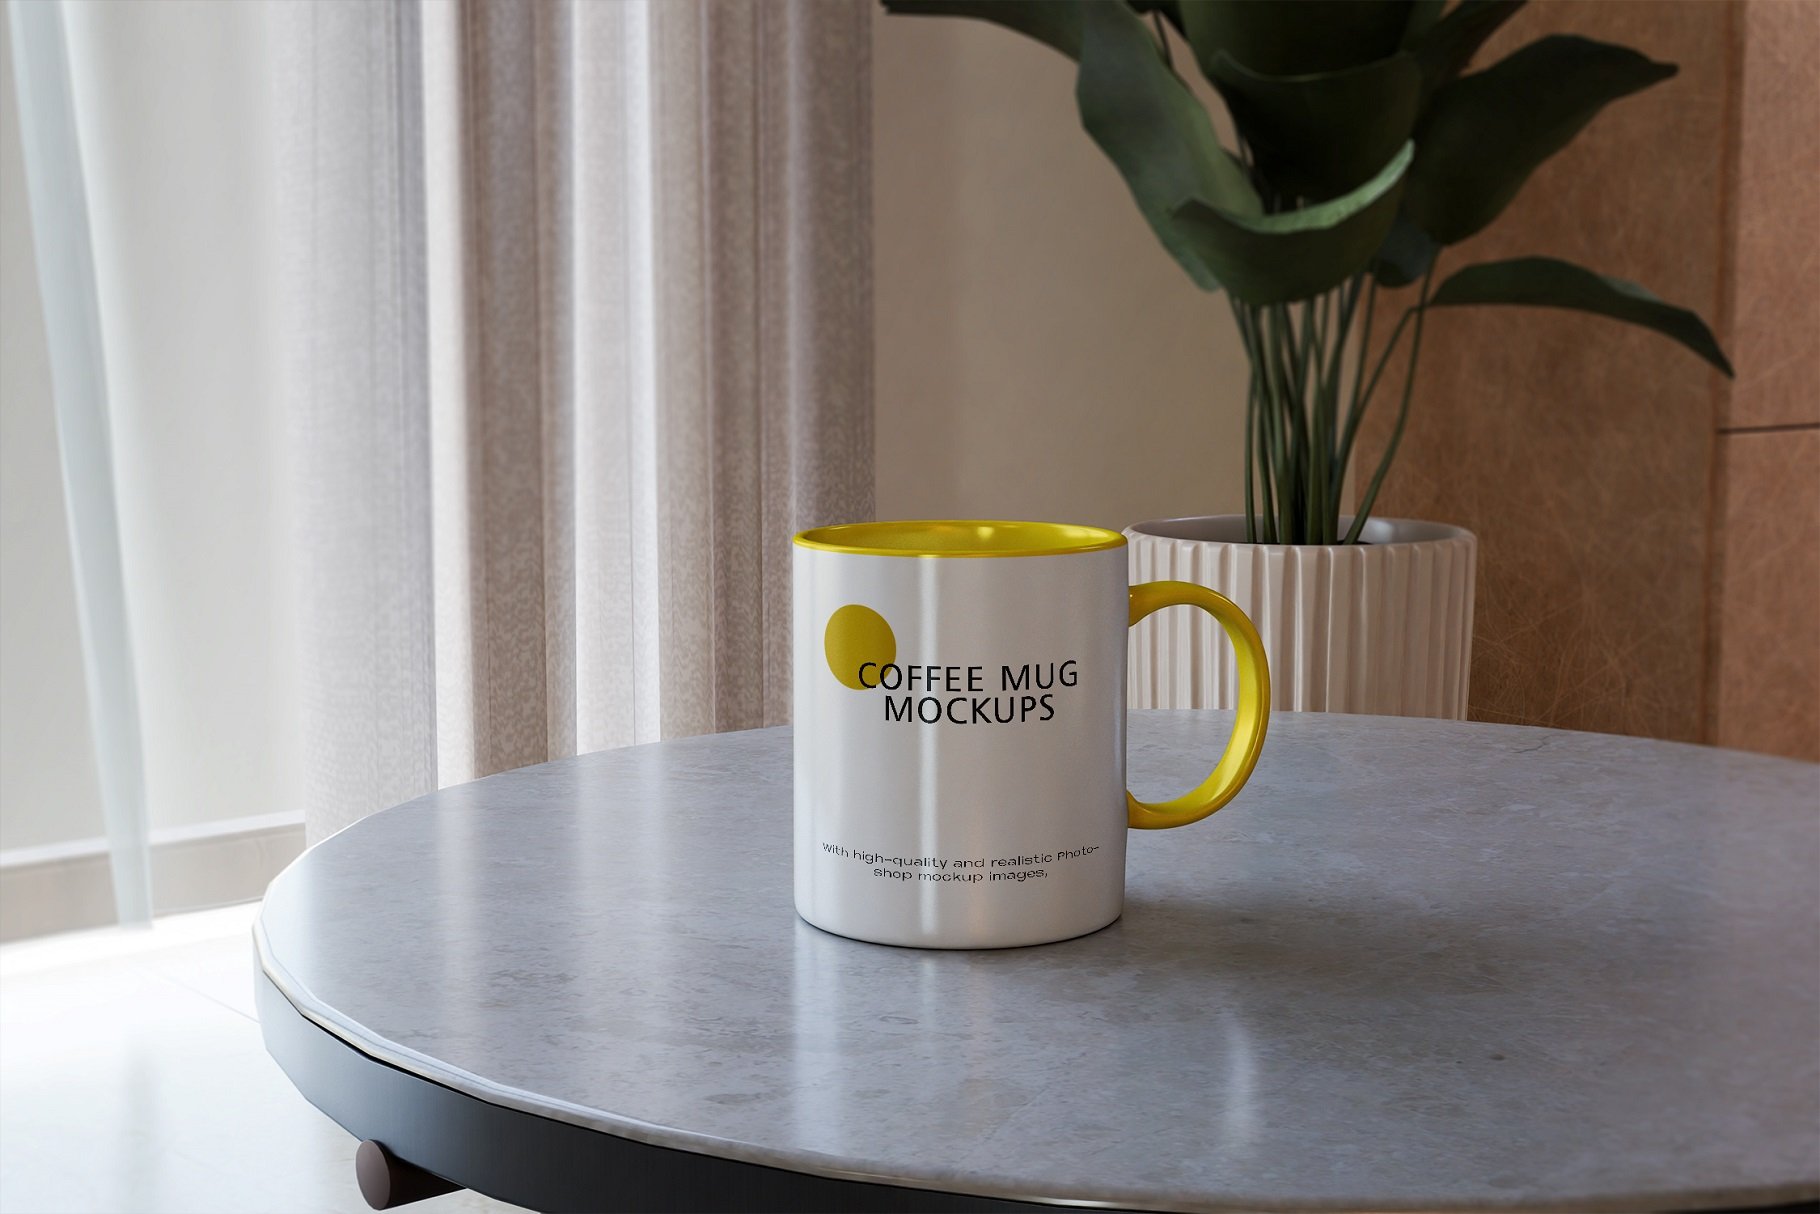 Coffee mug mockups cover image.